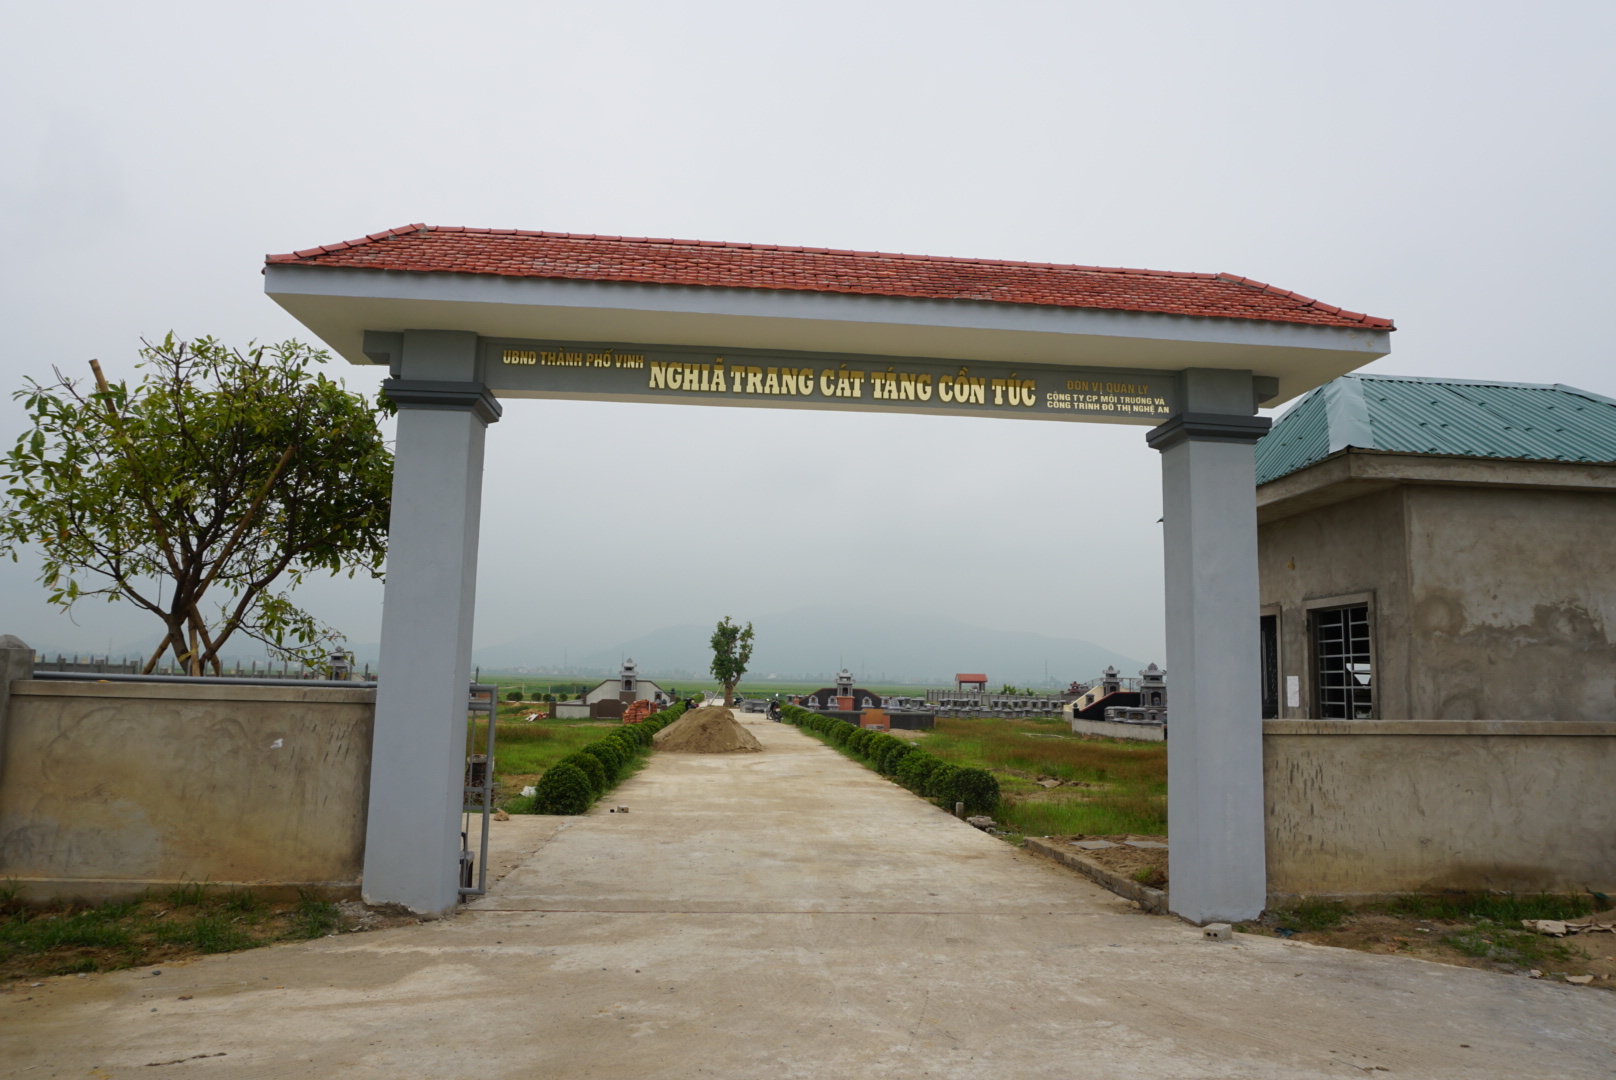  Dự án nghĩa trang cát táng Cồn Túc xã Nghi Kim thành phố Vinh 